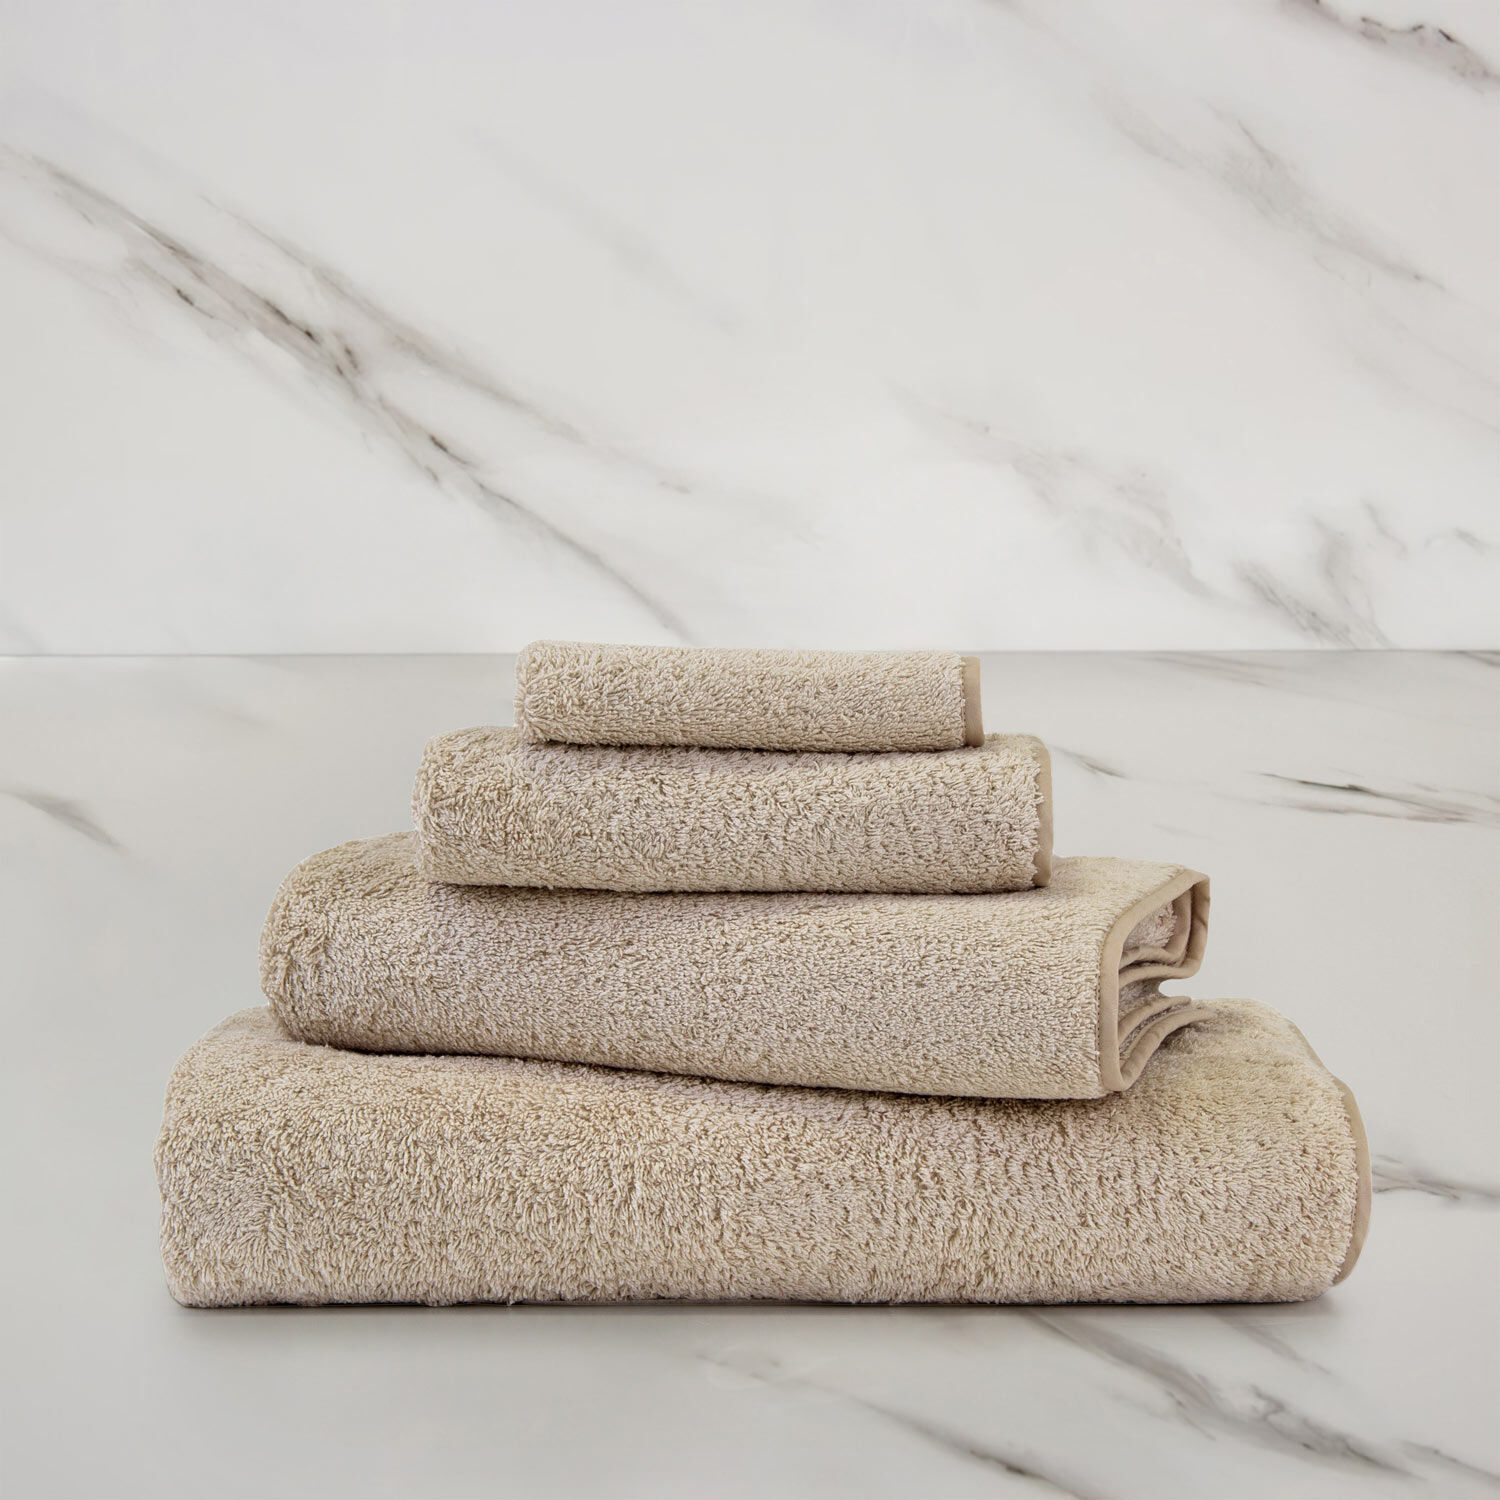 Bath Sheets - 100% Cotton Extra Large Bath Towels, 4 Piece Bath